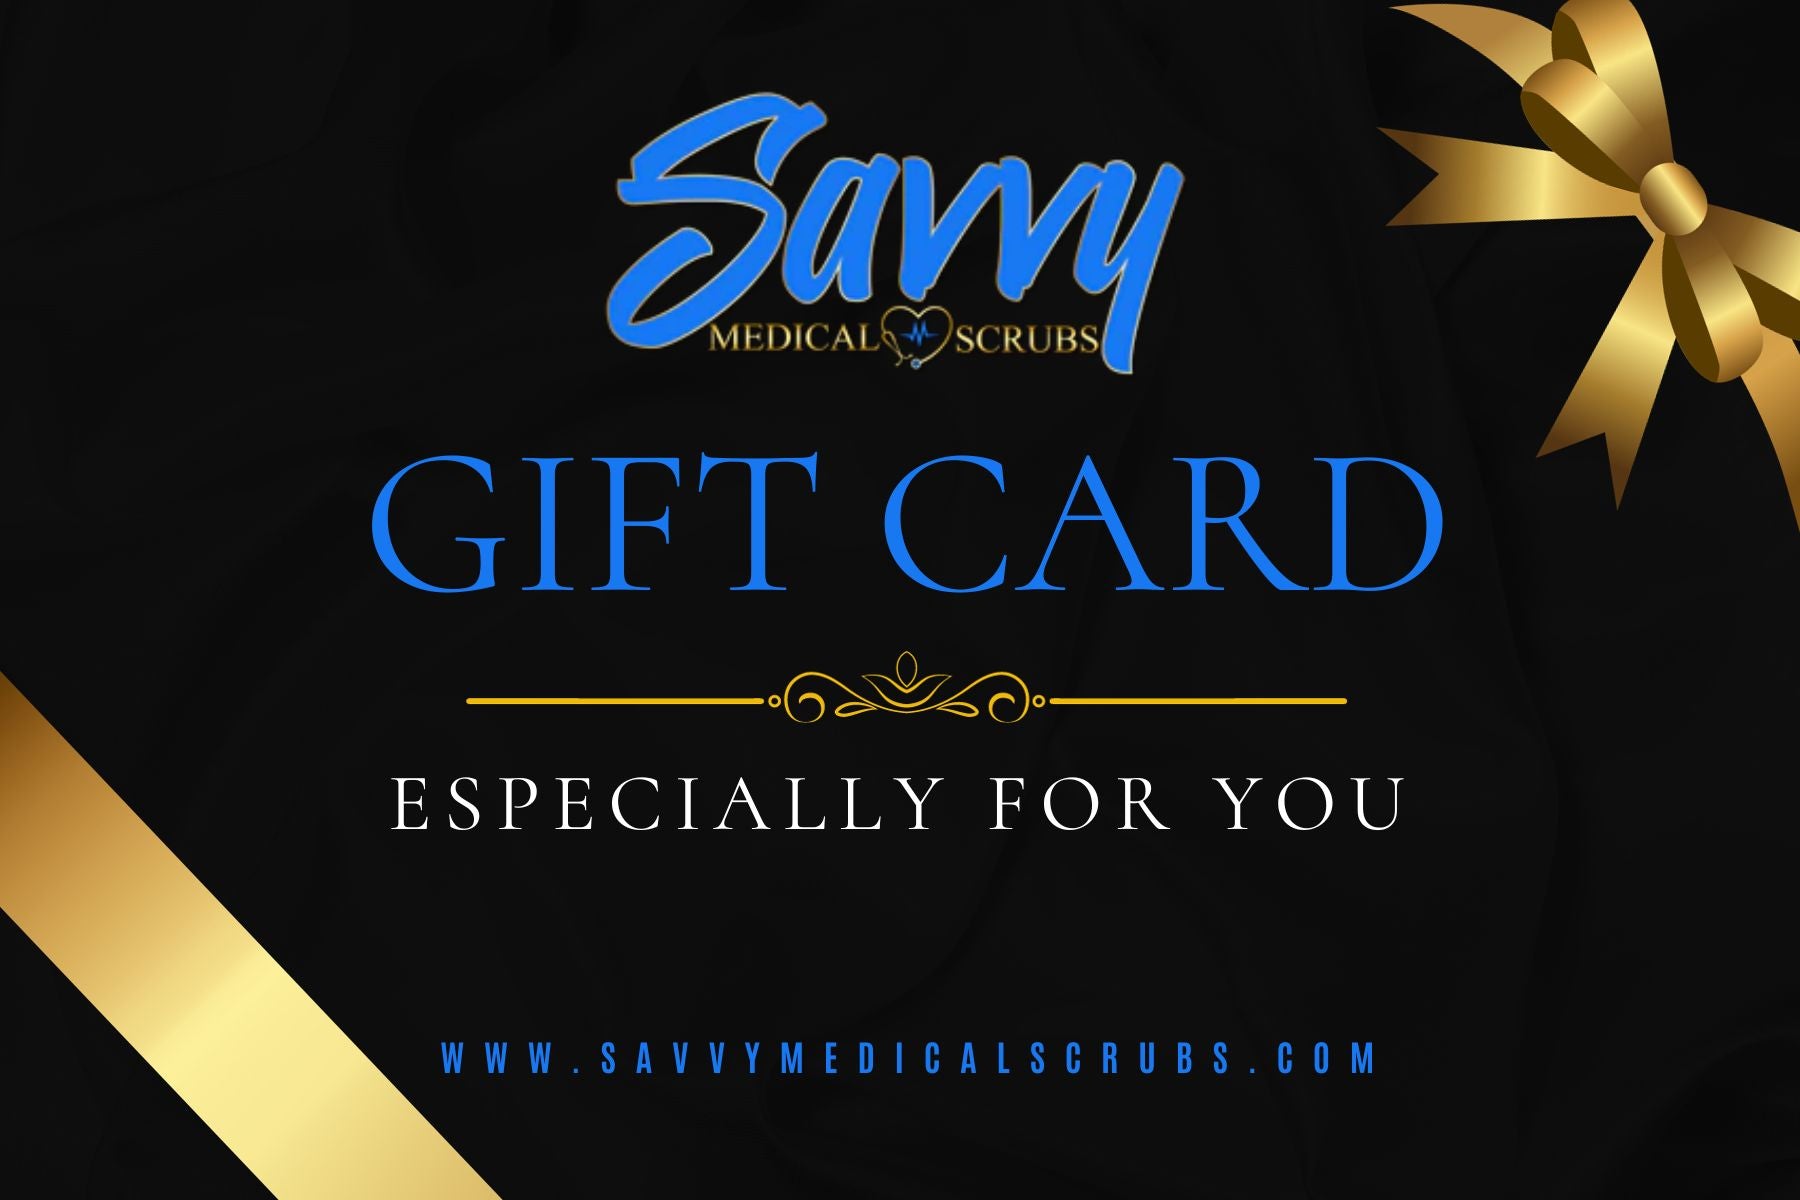 Savvy Gift Card